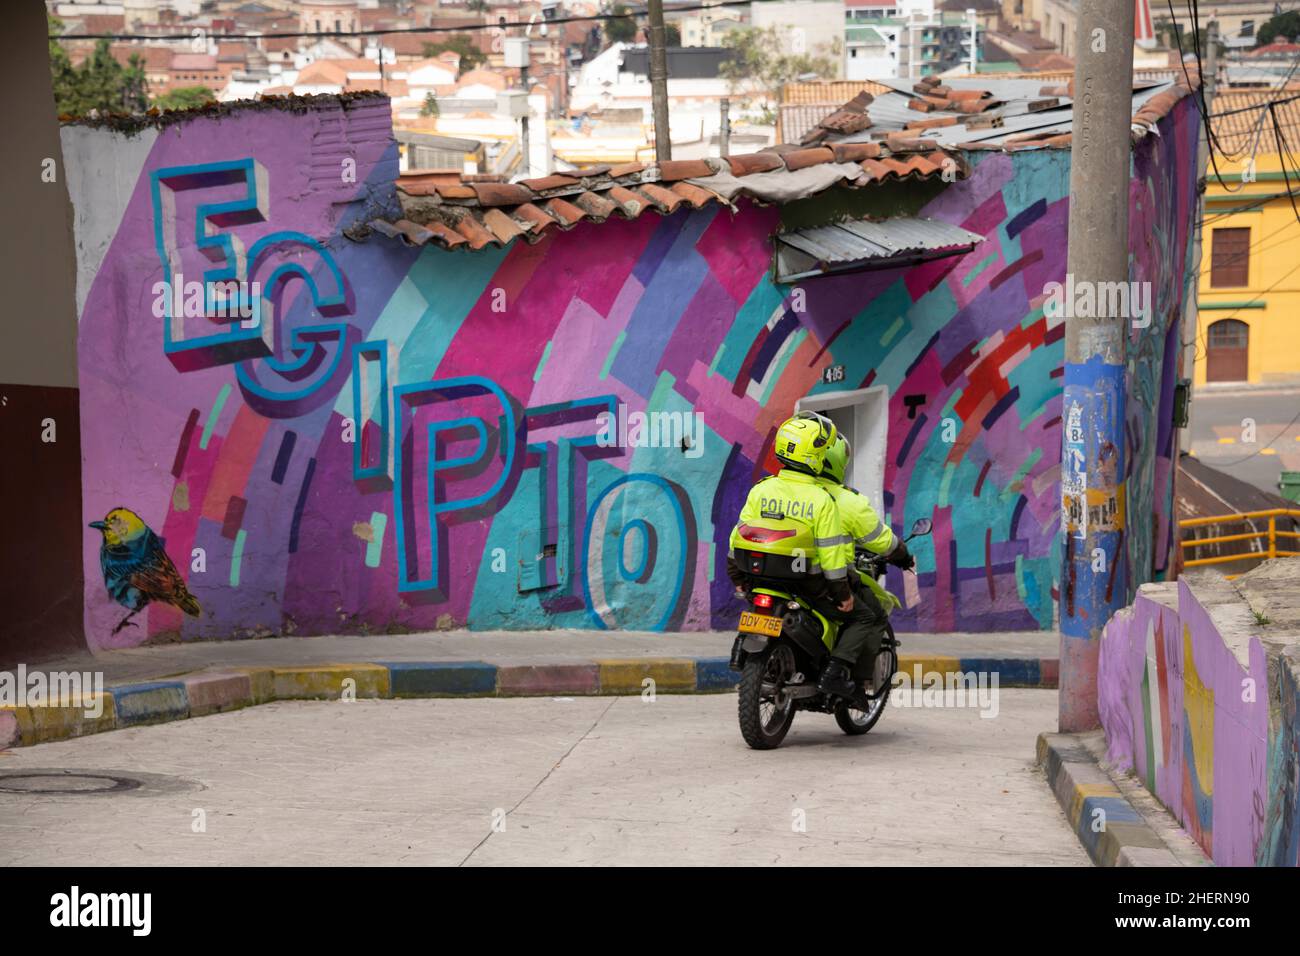 Police moto sur partrol dans le quartier autrefois célèbre de Barrio Egipto, Bogota, Colombie, Amérique du Sud.Visites touristiques maintenant. Banque D'Images